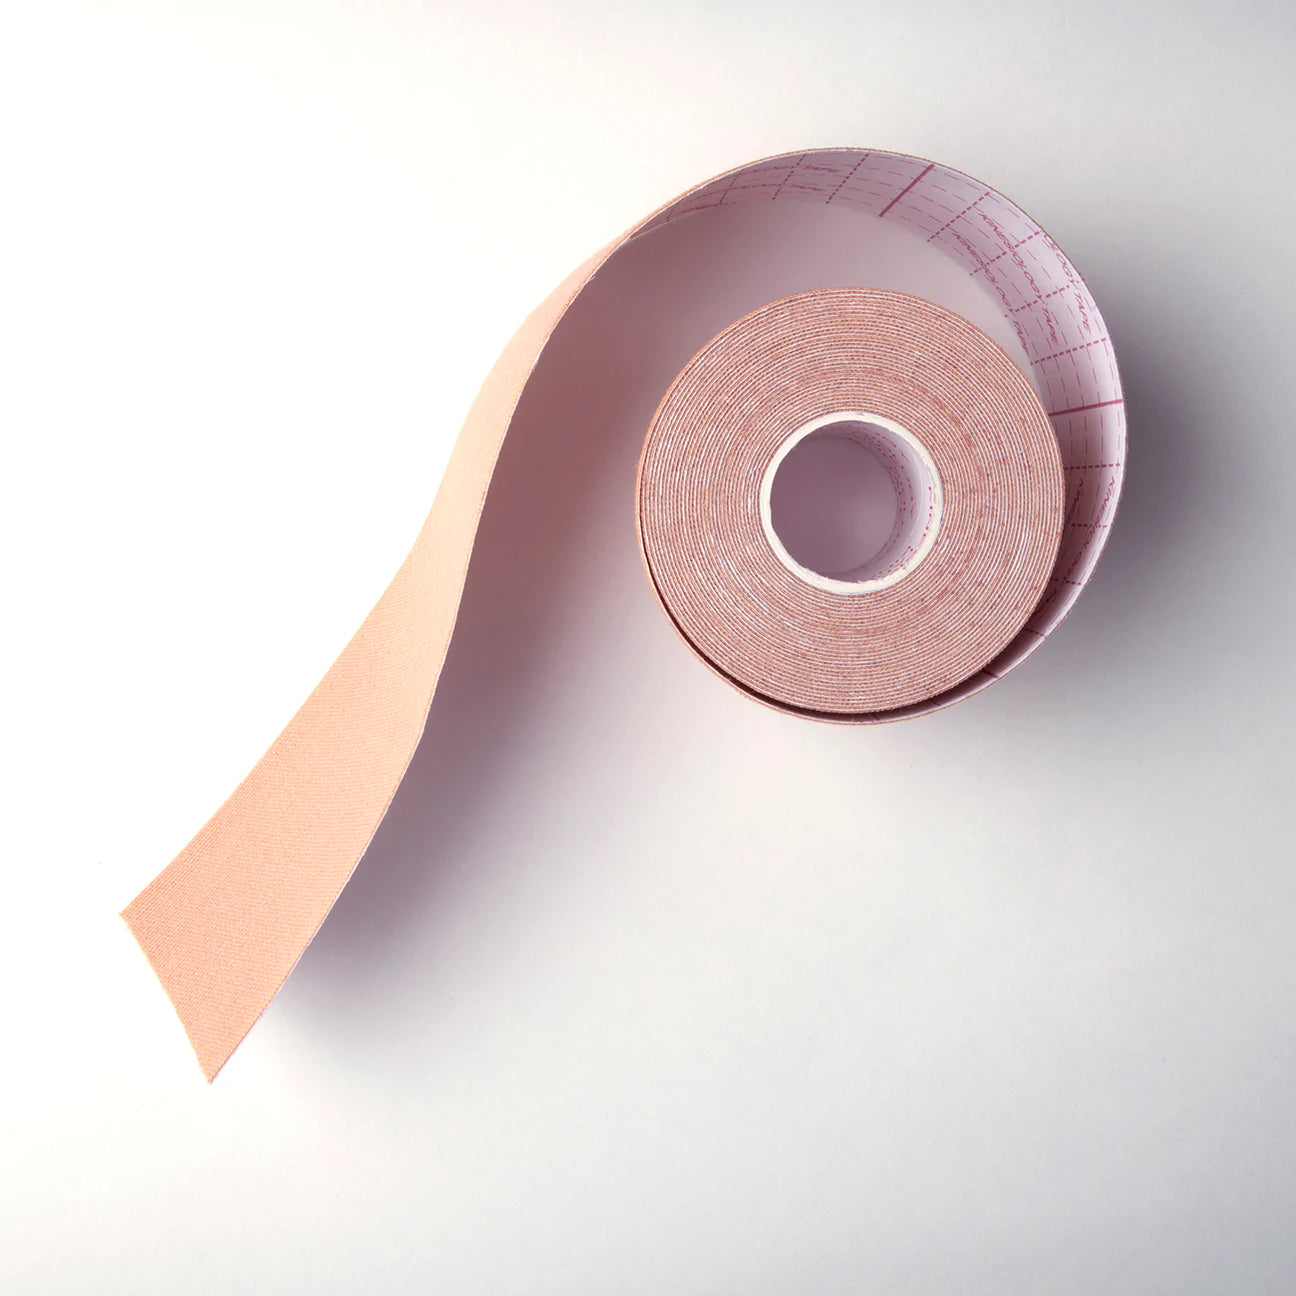 Tape 'N Shape Breast Tape Roll 15505 - Beige